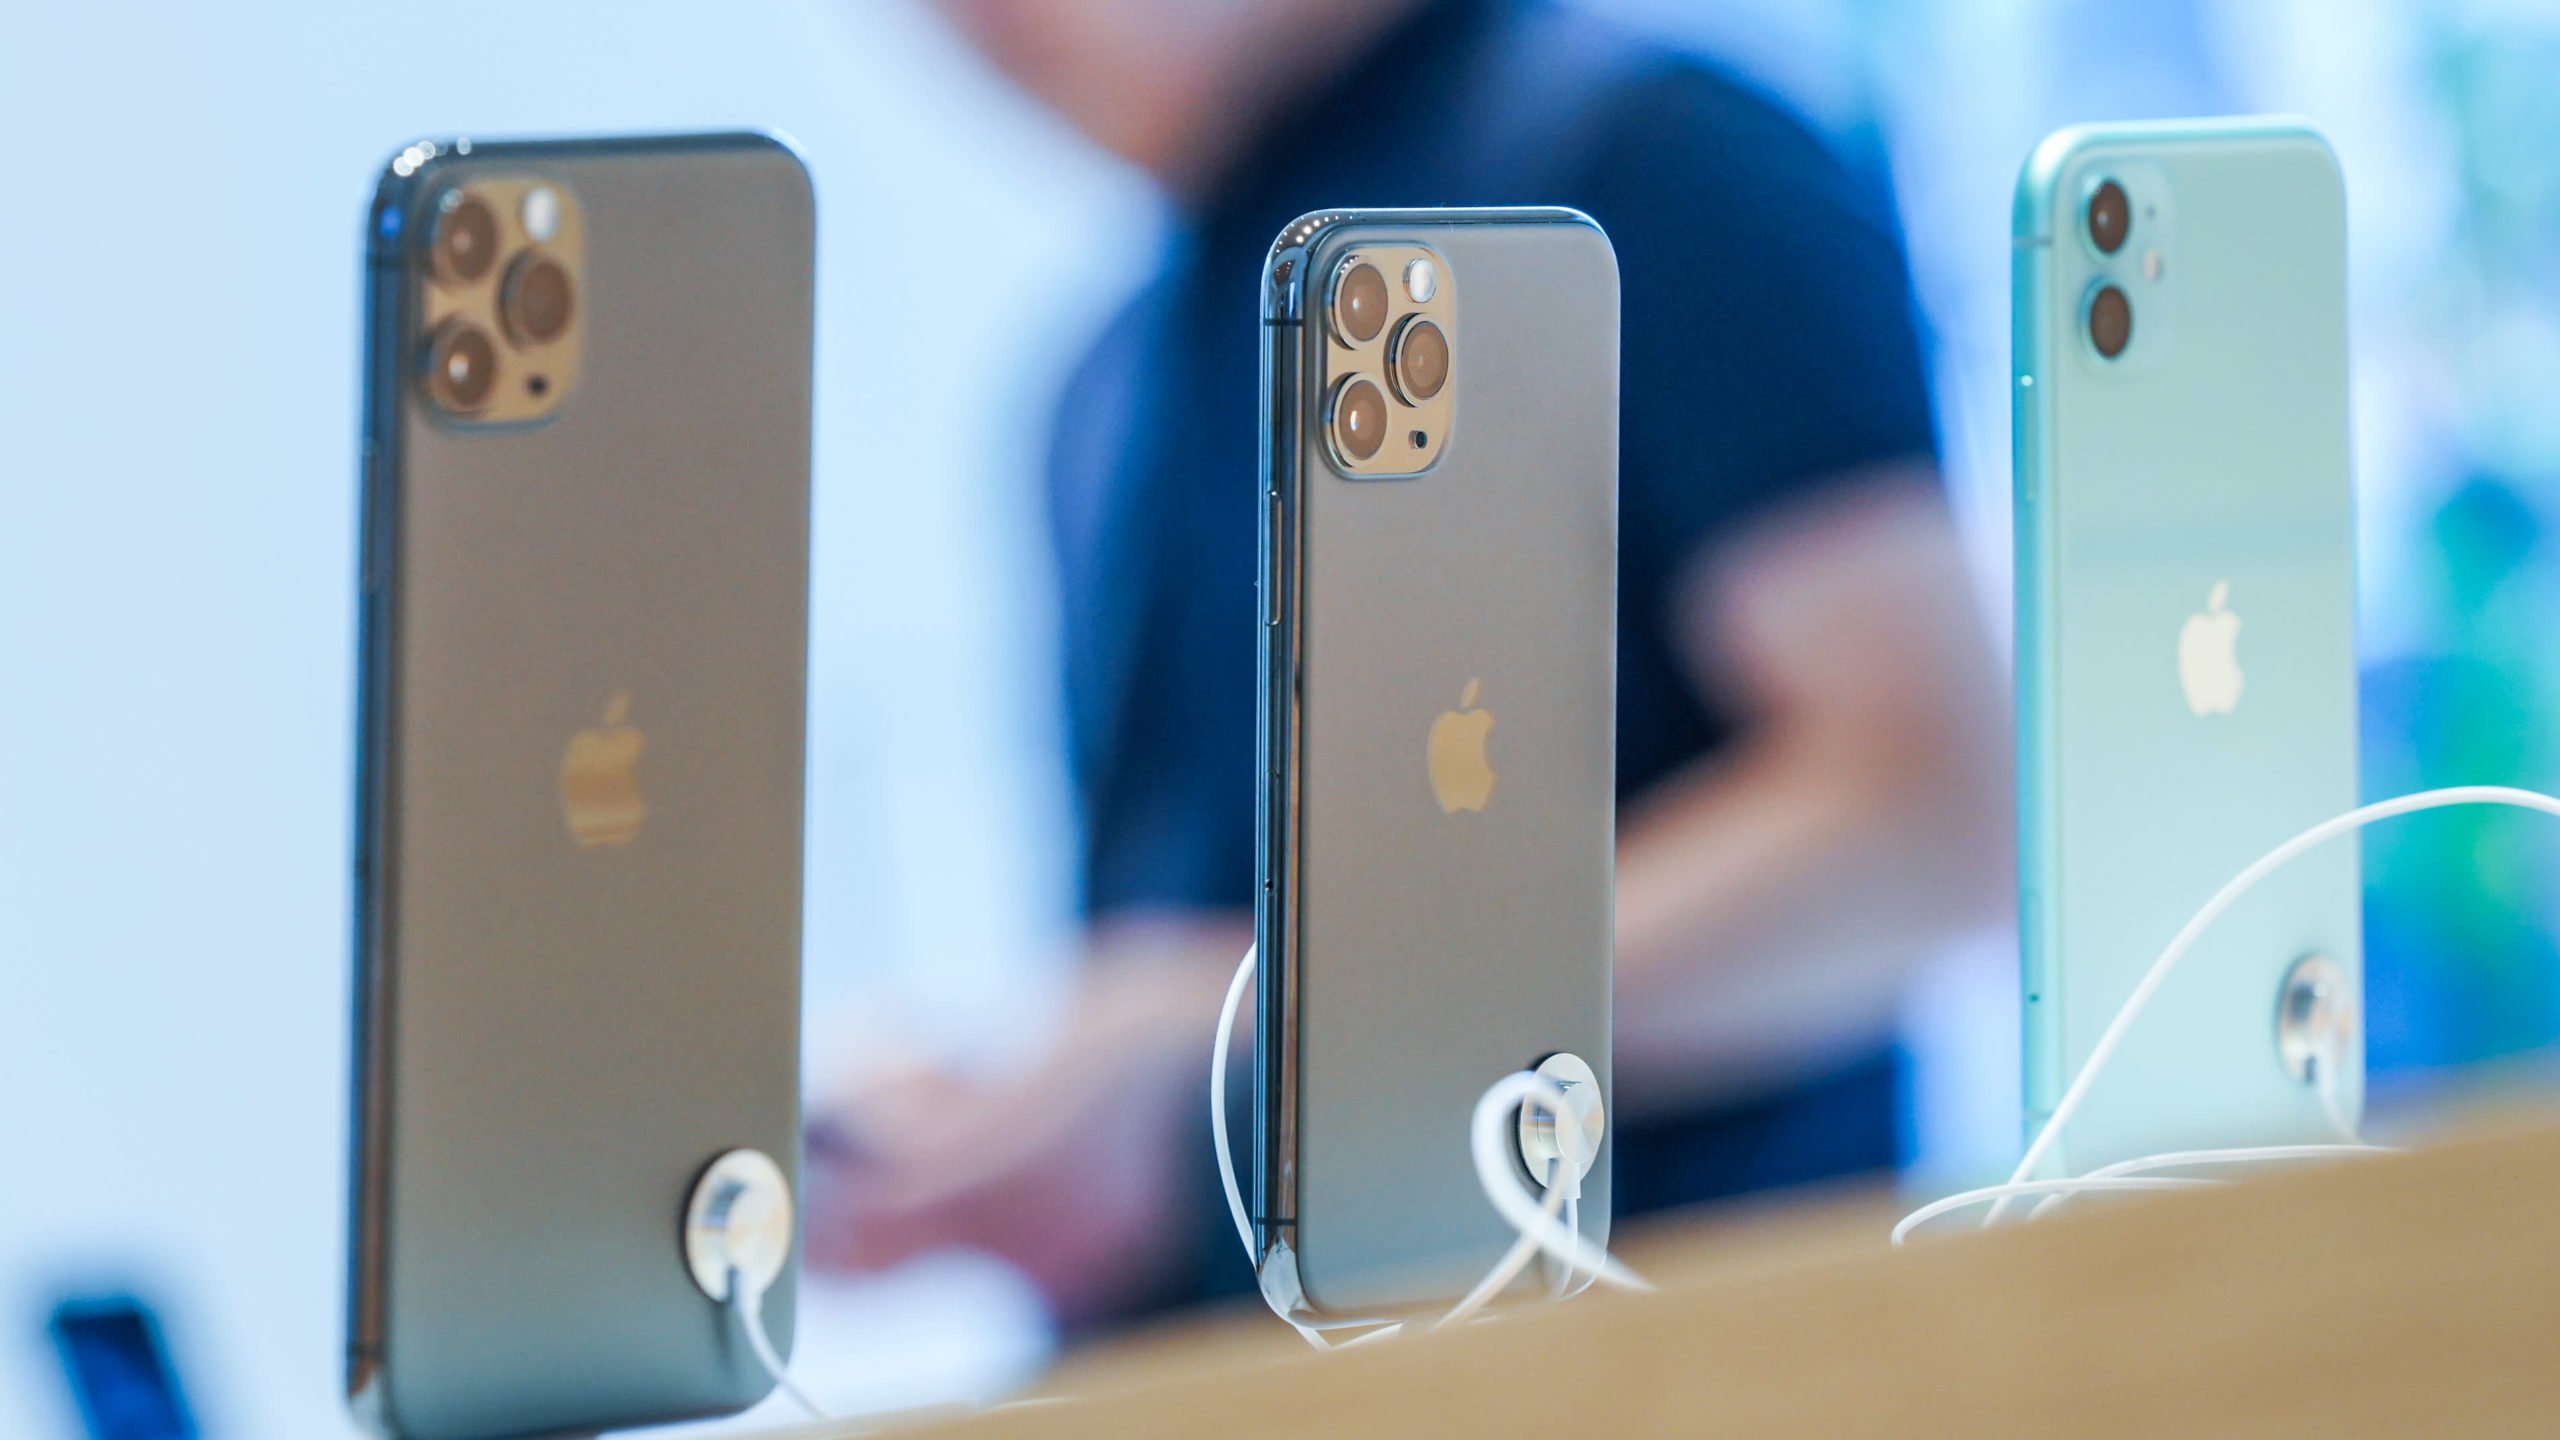 Procon-SP multa Apple em R$ 10 milhões por iPhone sem carregador